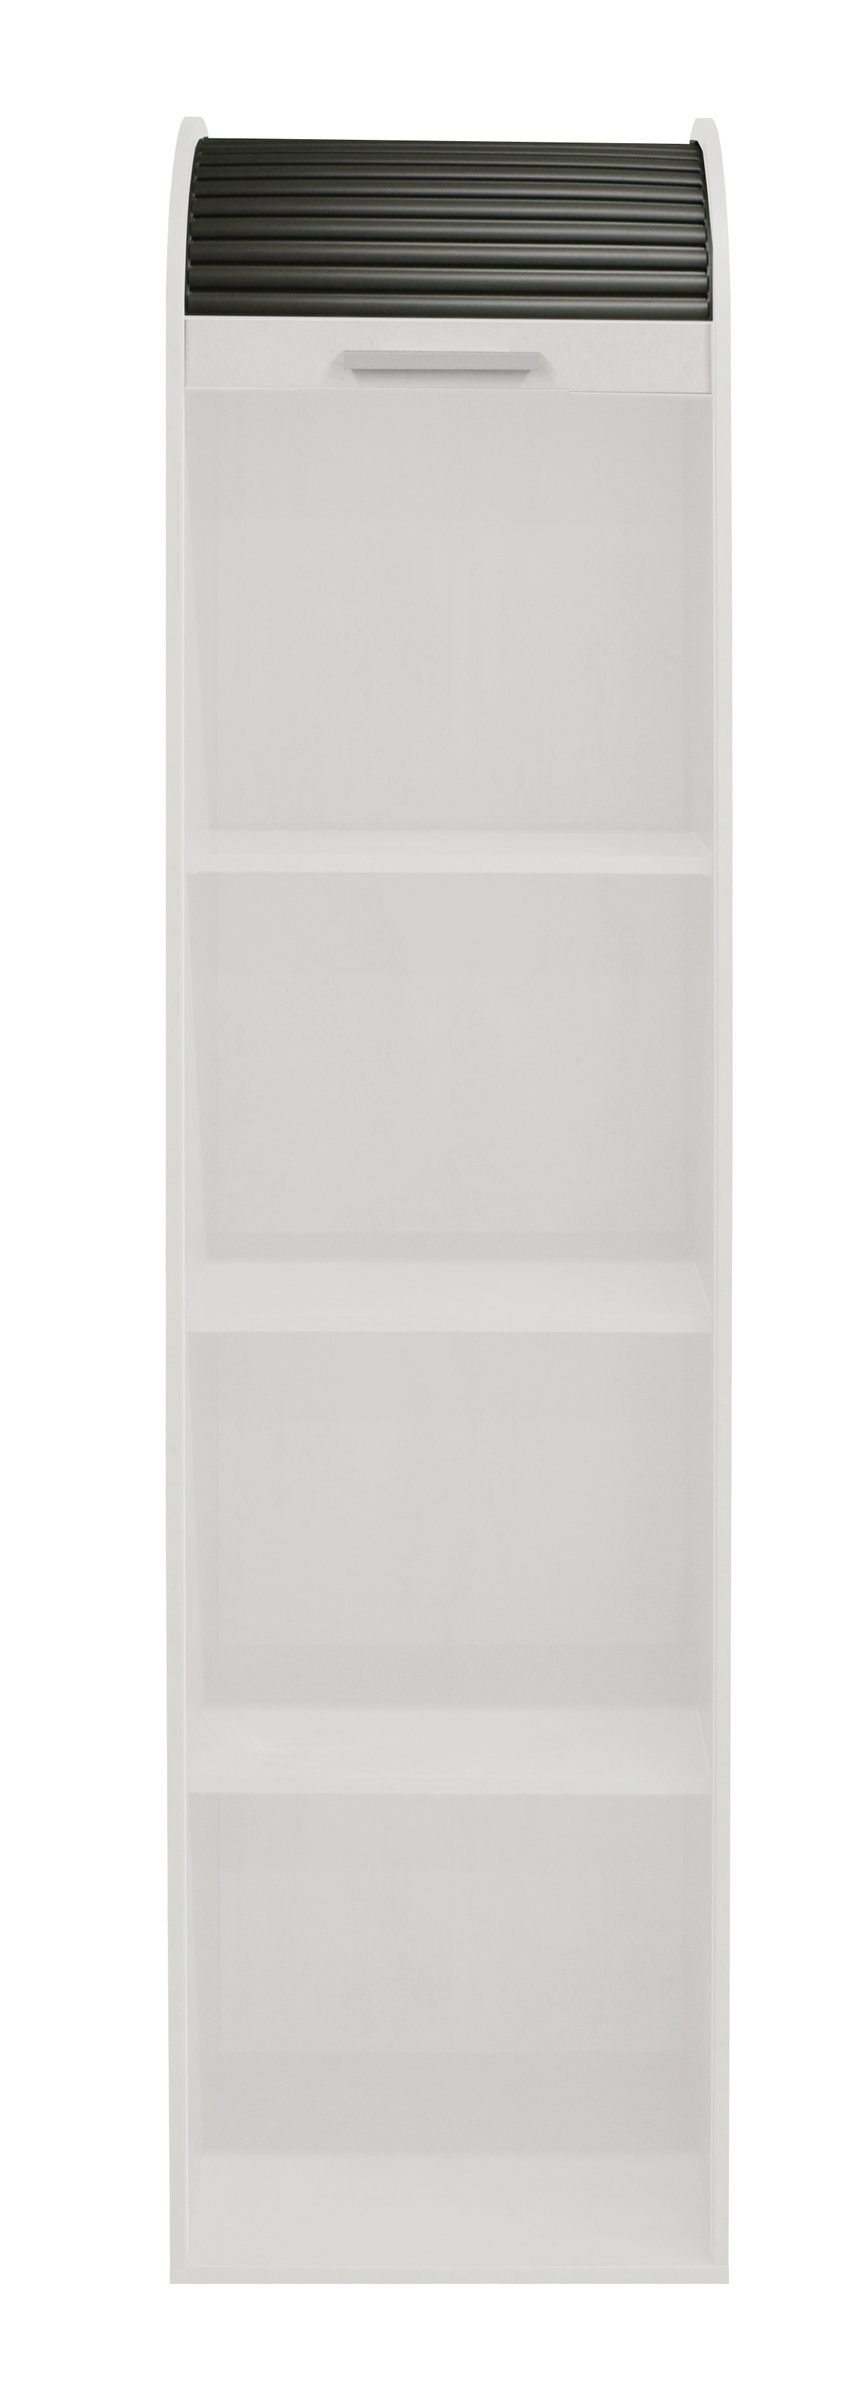 möbelando Jalousieschrank Jalousieschrank (BxHxT: 46x192x44 cm) in weiß  matt lack / graphit mit 2 Einlegeböden